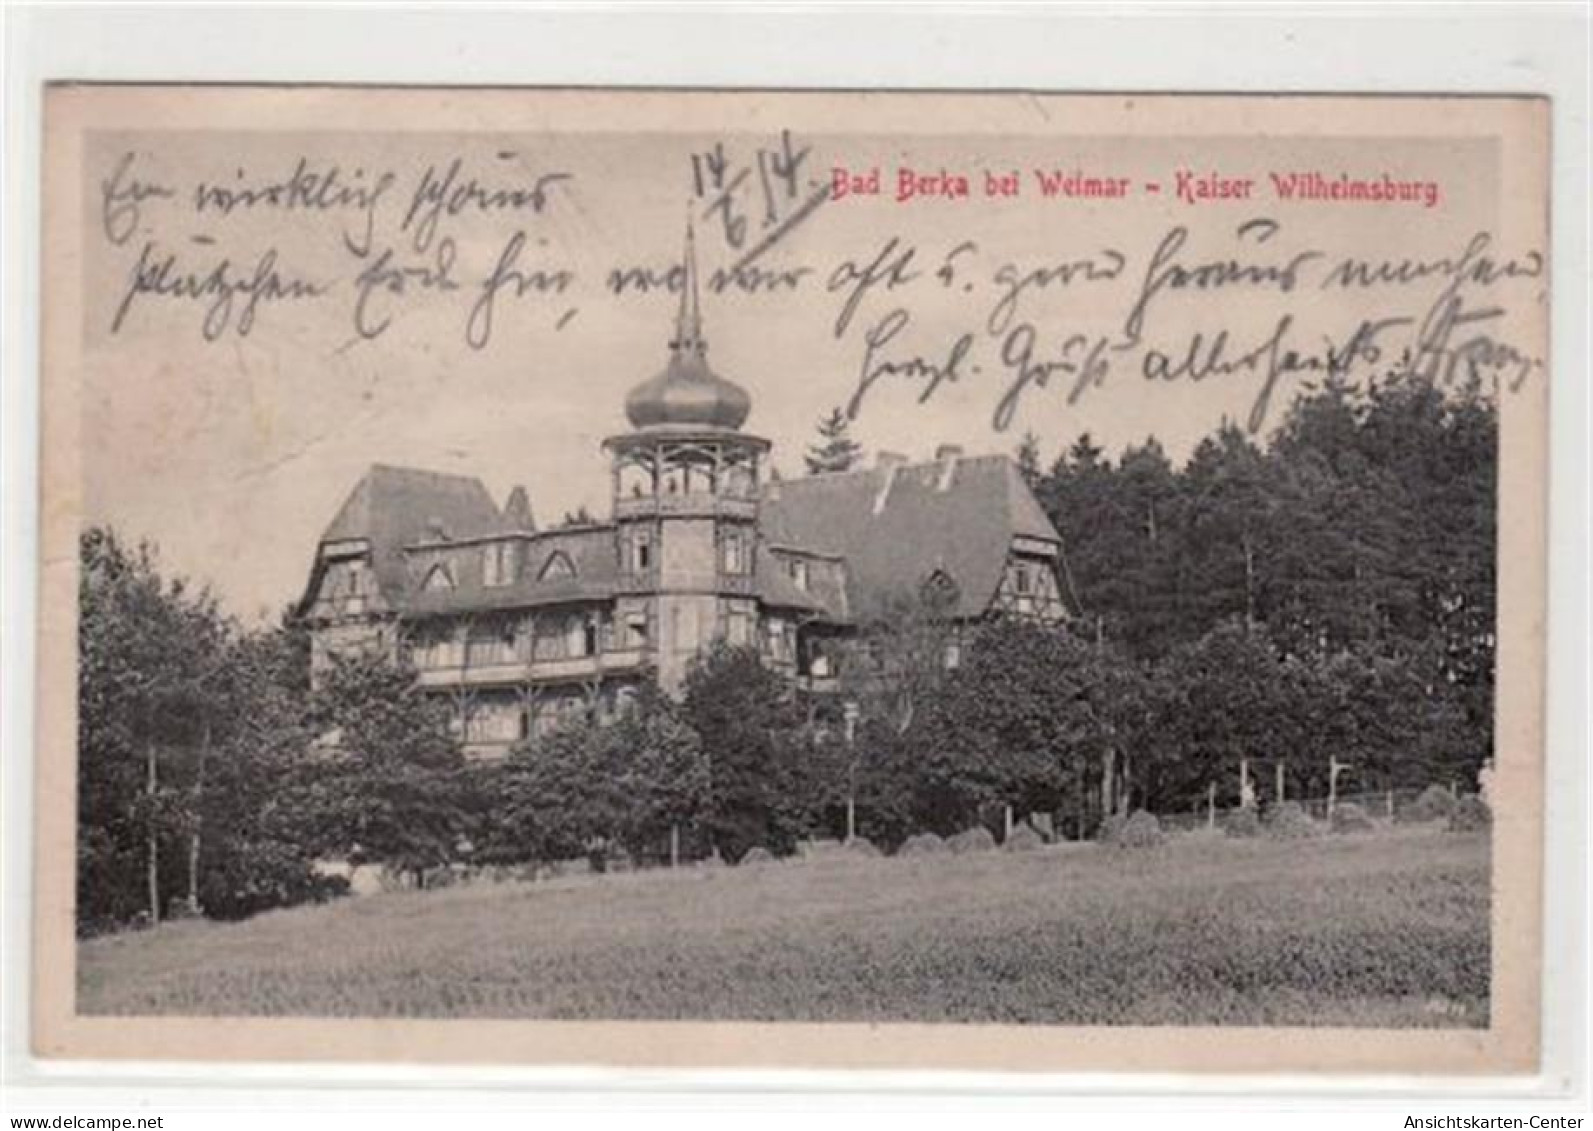 39016306 - Bad Berka Bei Weimar Mit Kaiser Wilhelmsburg Gelaufen 1914. Knickstellen Oben Links, Sonst Gut Erhalten. - Bad Berka